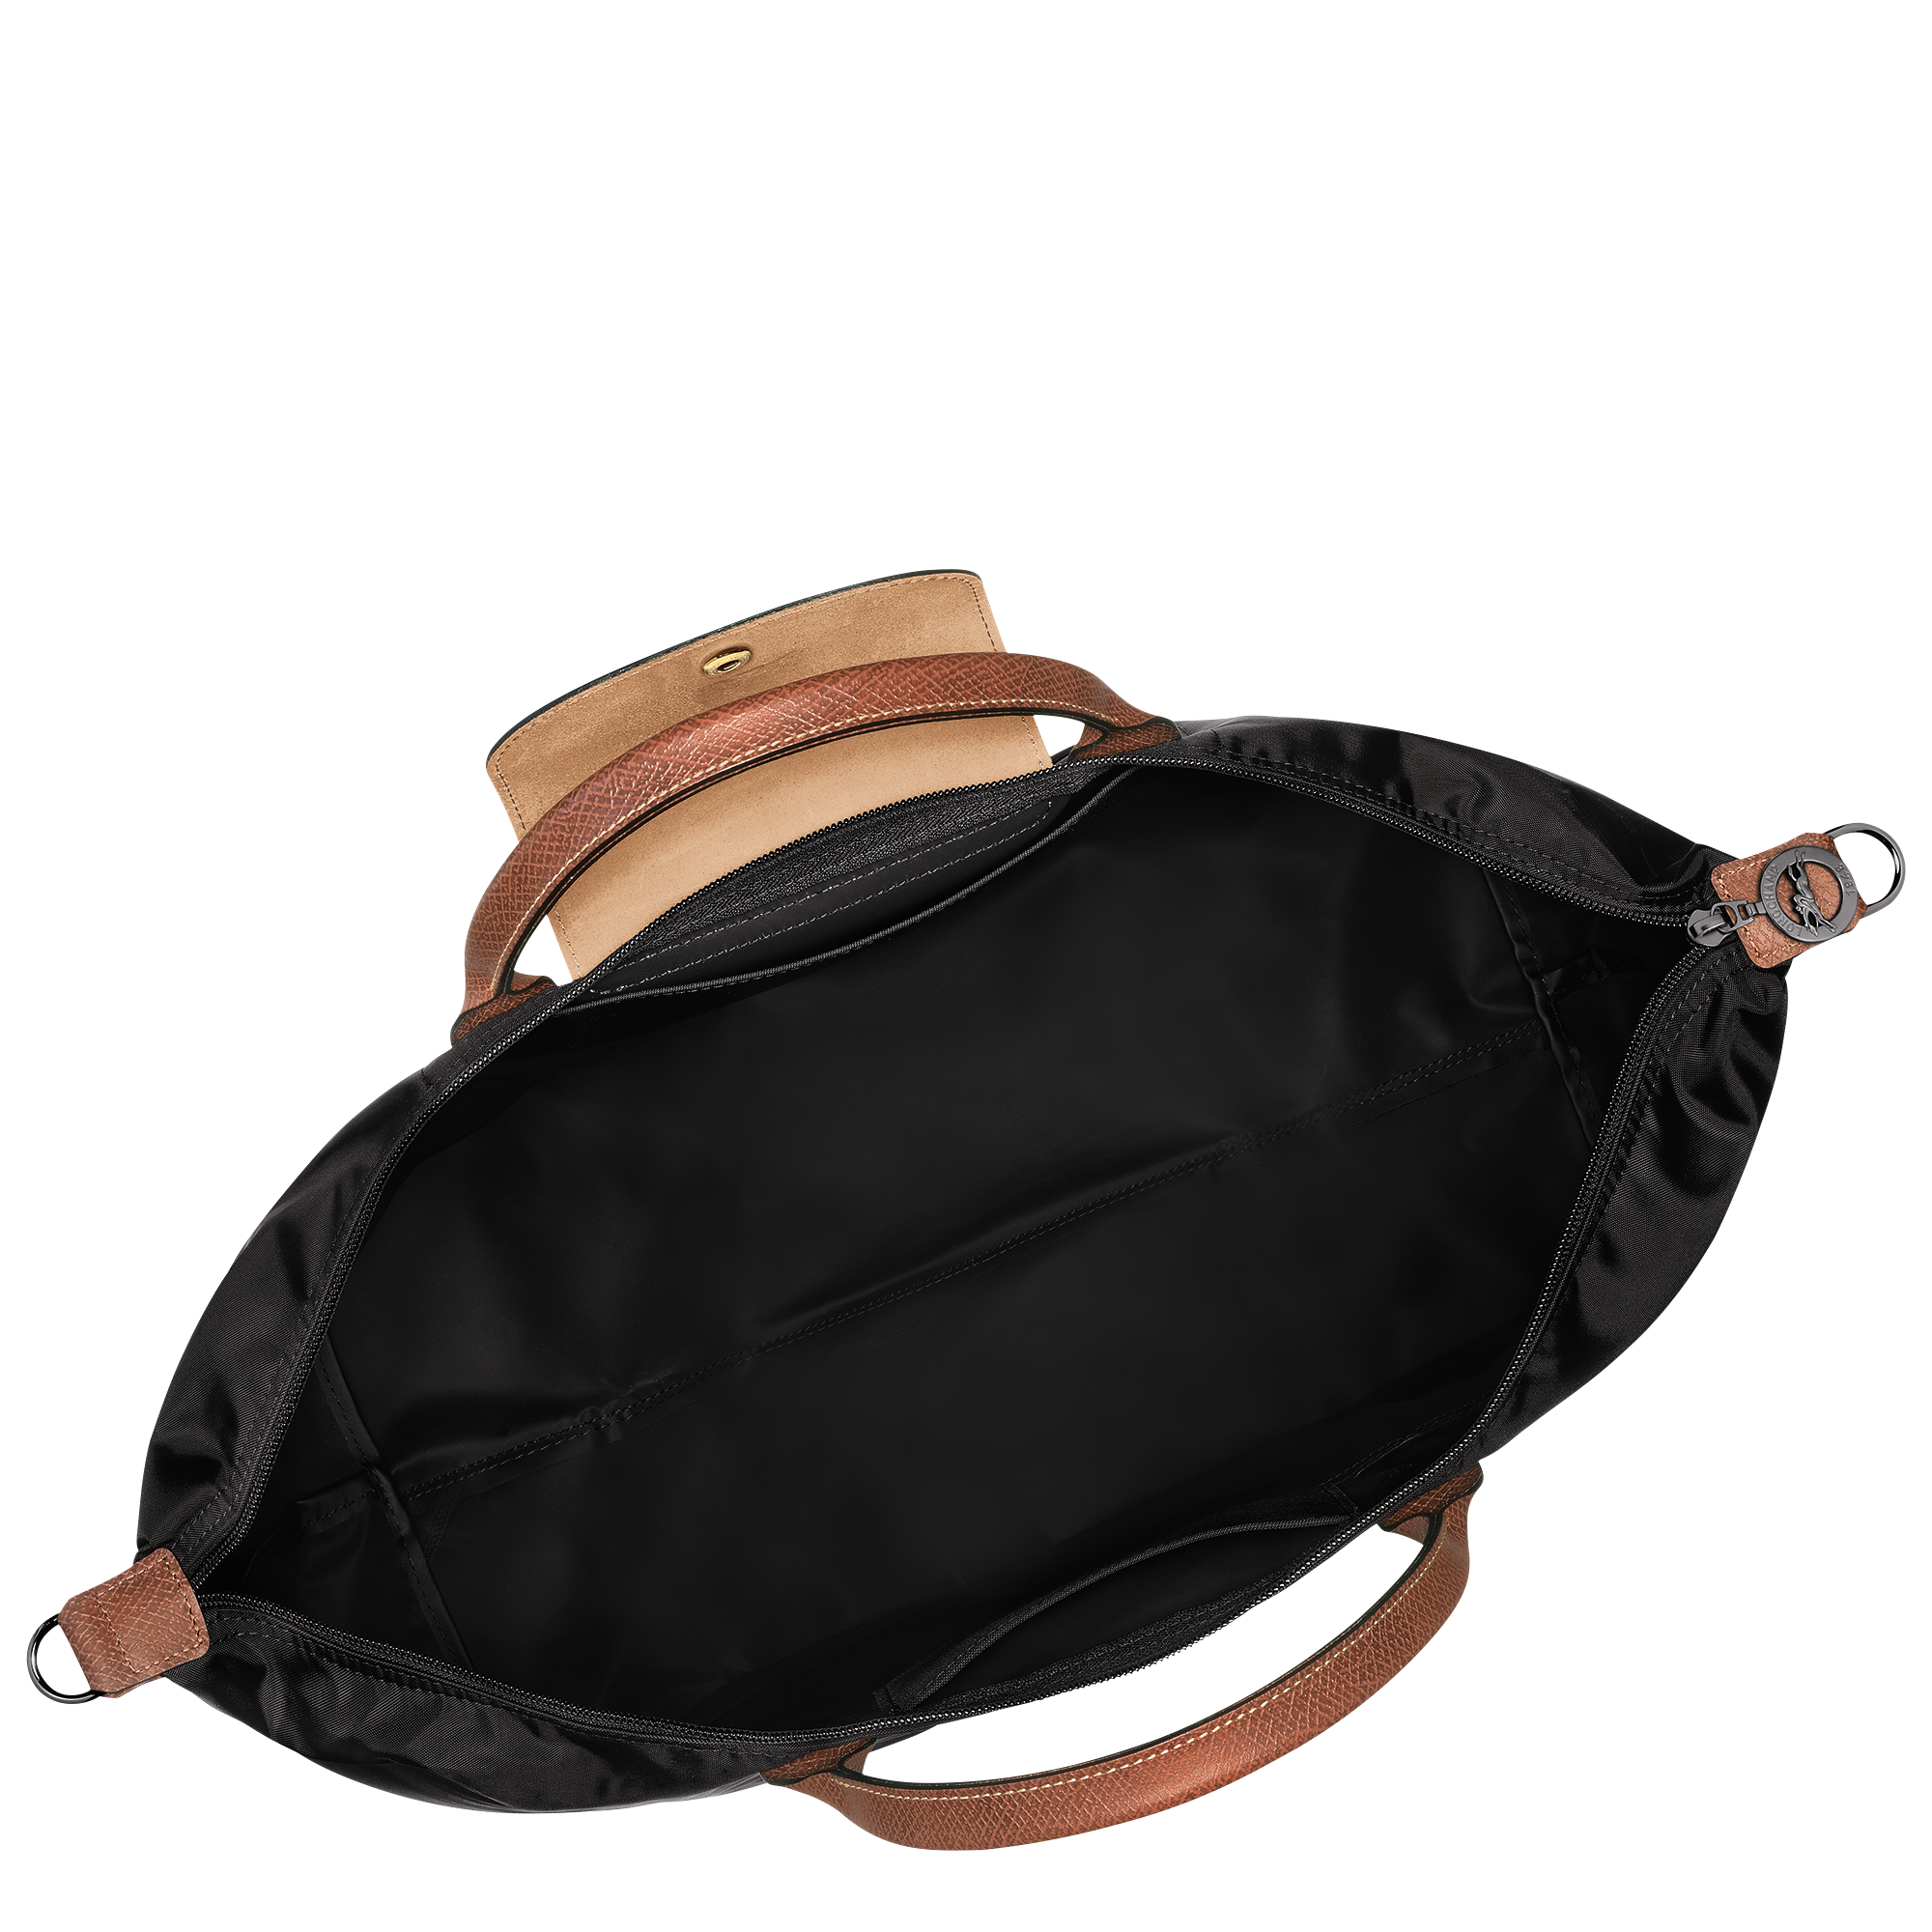 Le Pliage Original 可擴展旅行袋, 黑色